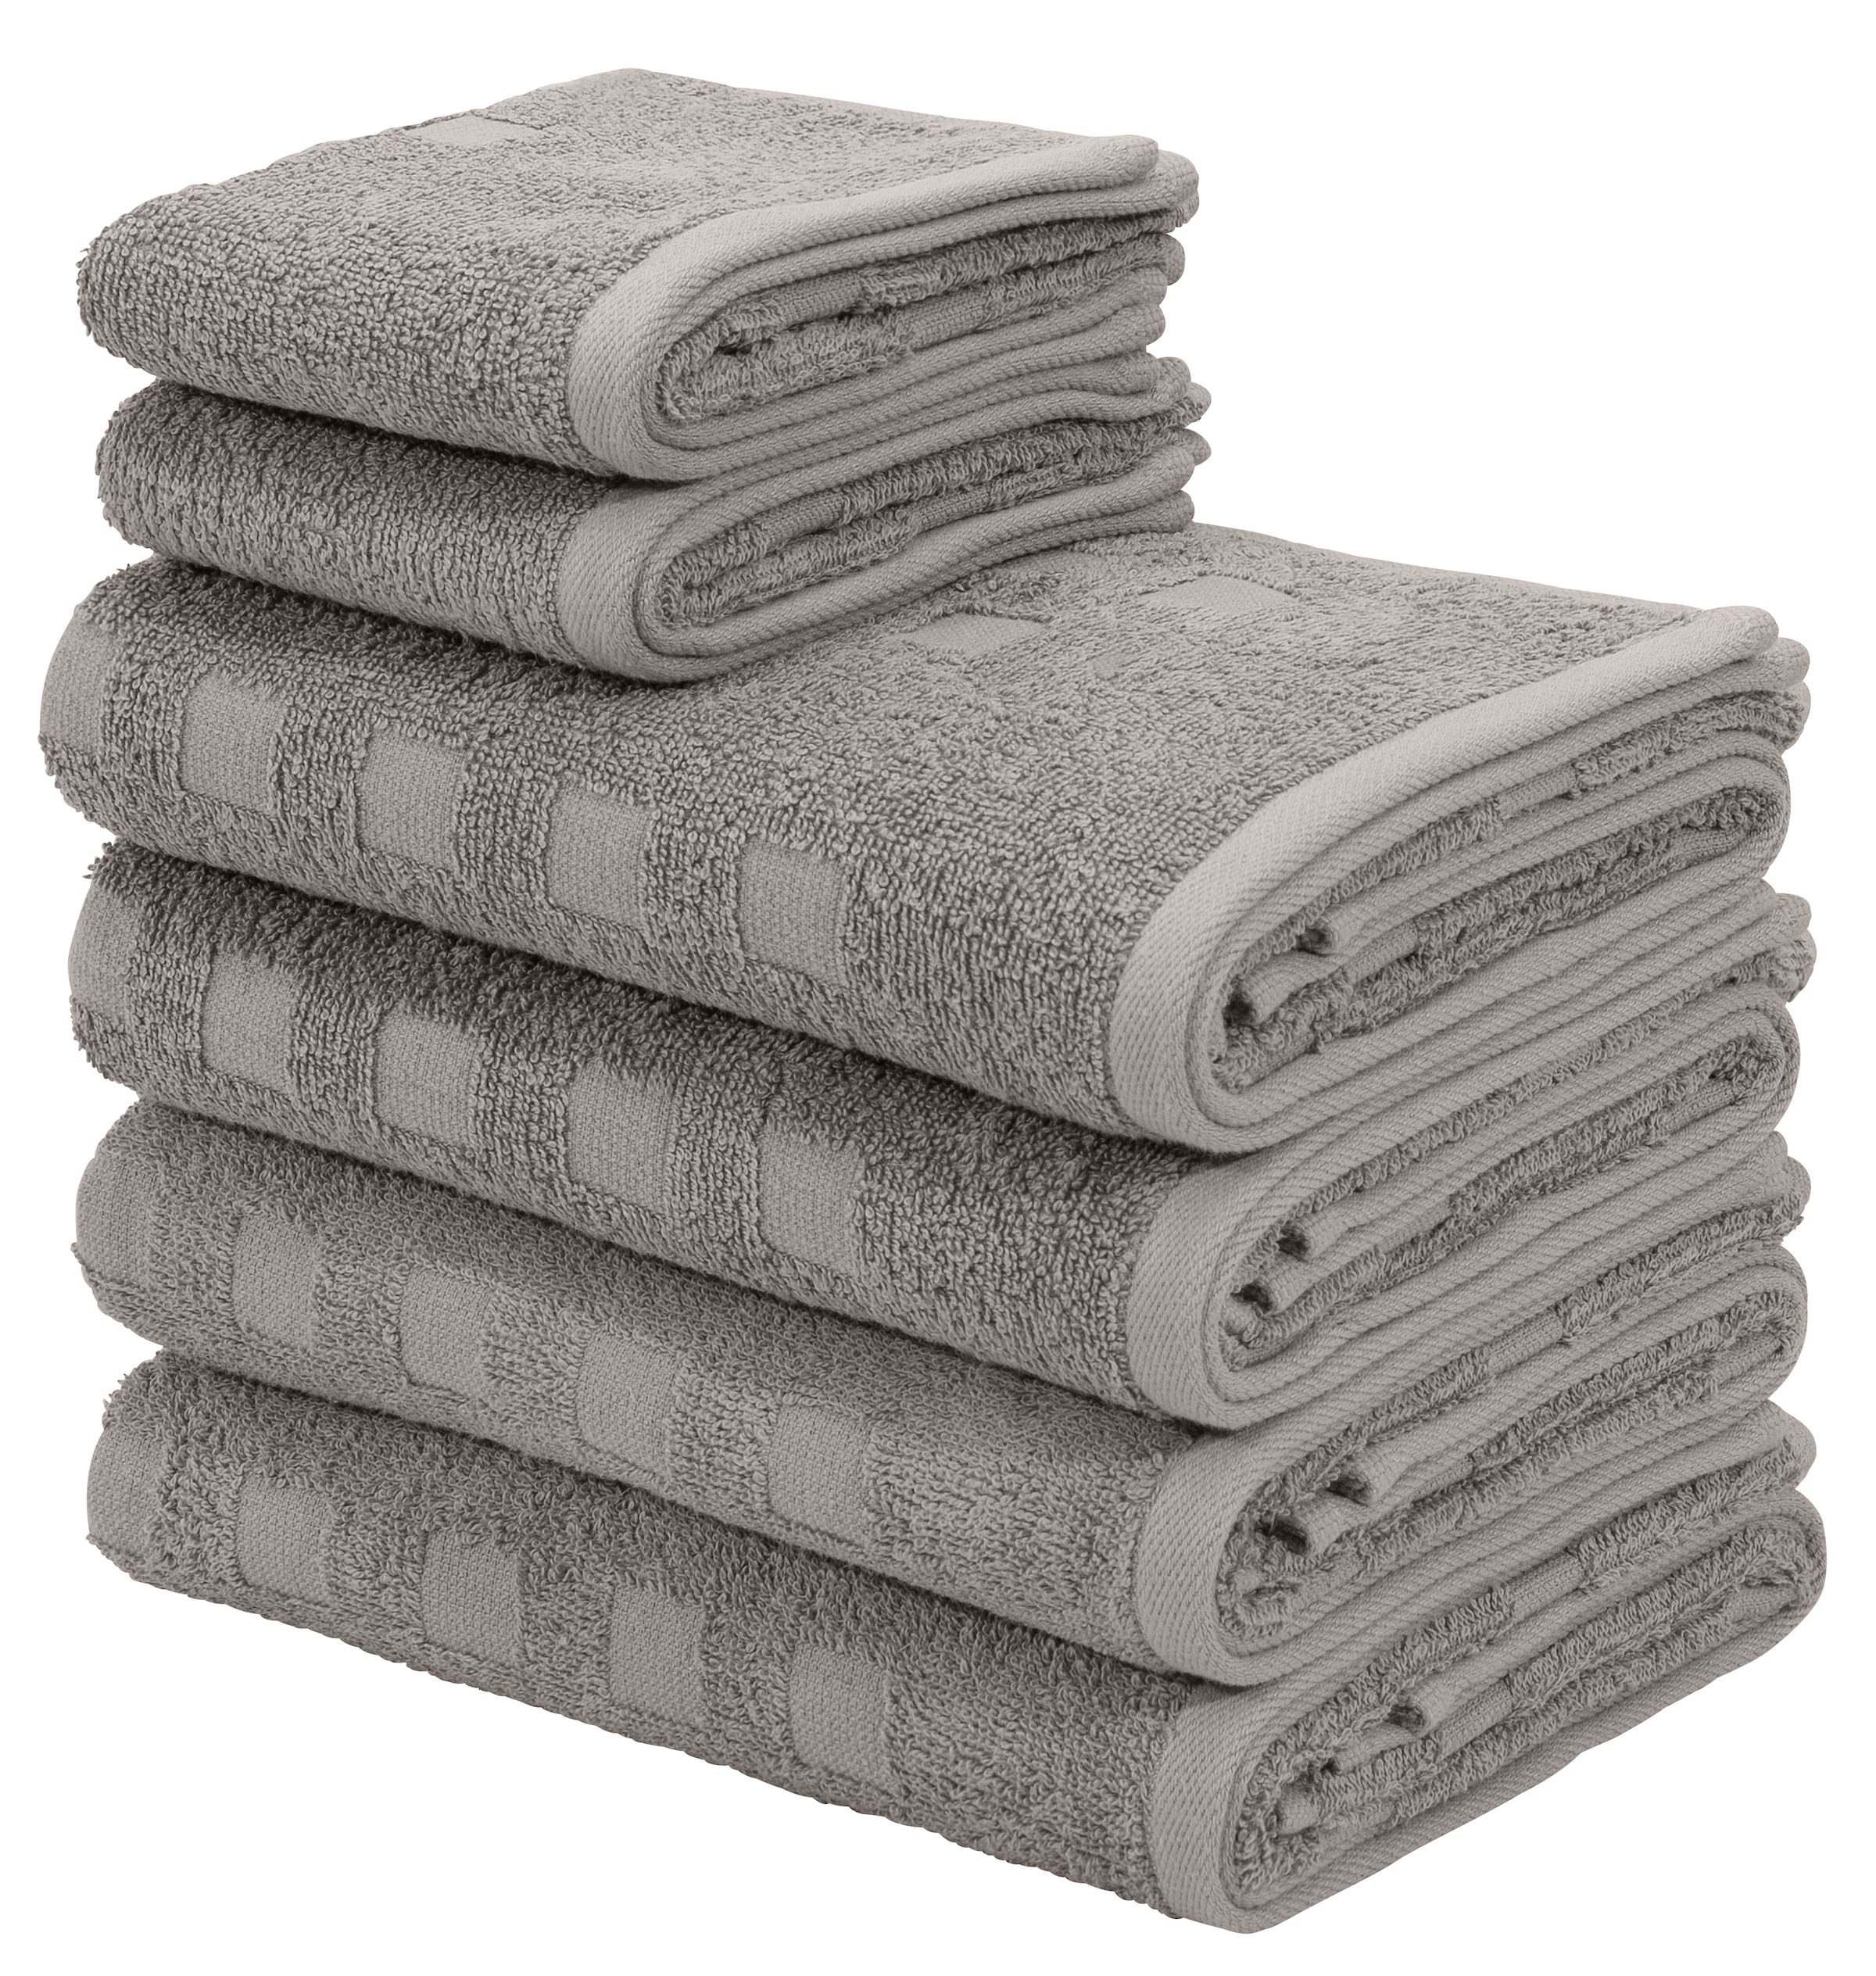 Handtuch-Sets online kaufen bei Quelle – Wir liefern